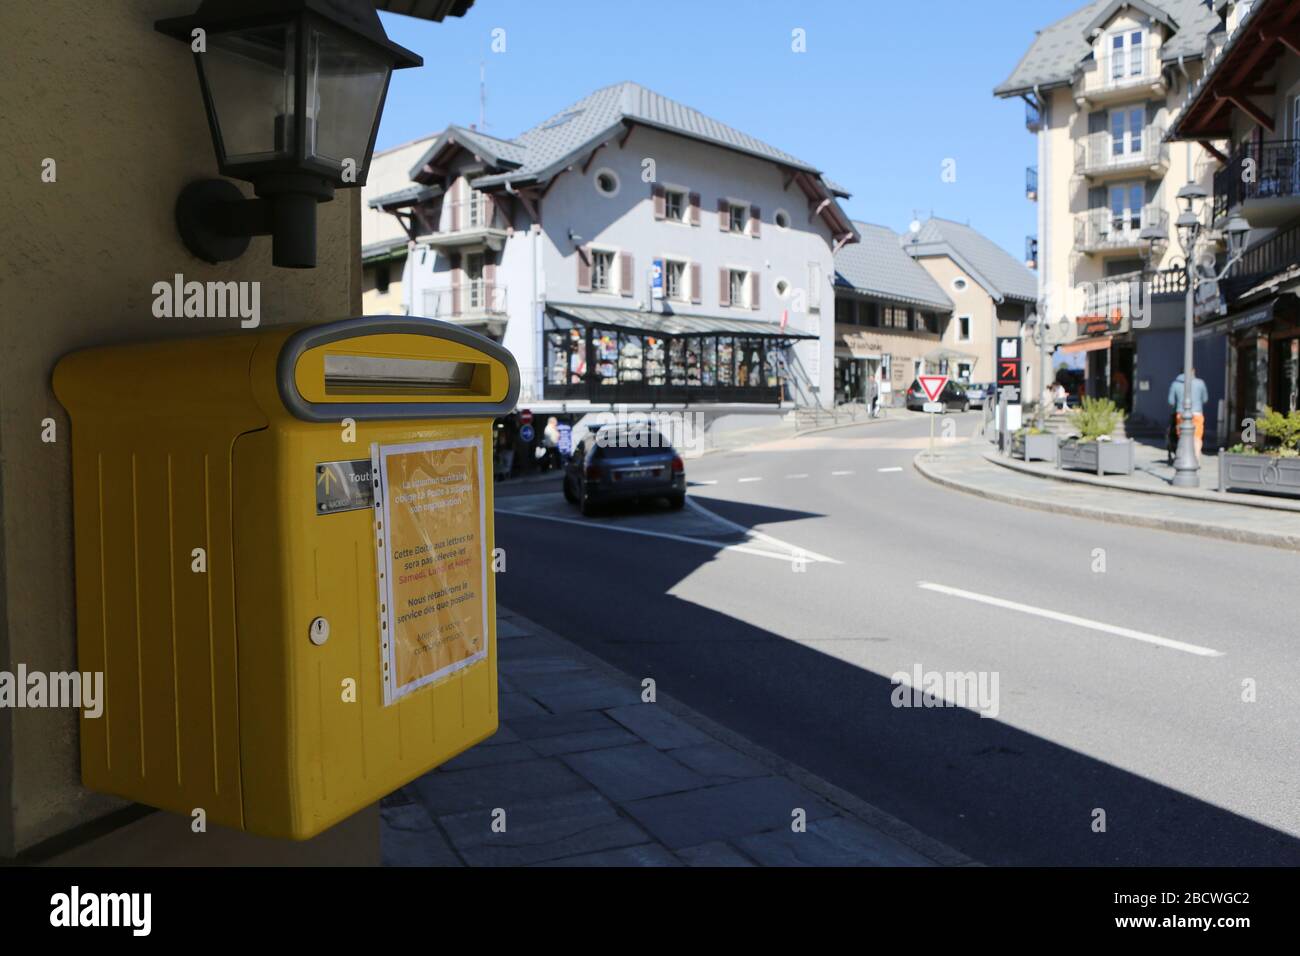 Boite aux lettres jaunes. Affiche d'informations sur les horaires. Covid19. Saint-Gervais-les-Bains. Haute-Savoie. France. Stock Photo